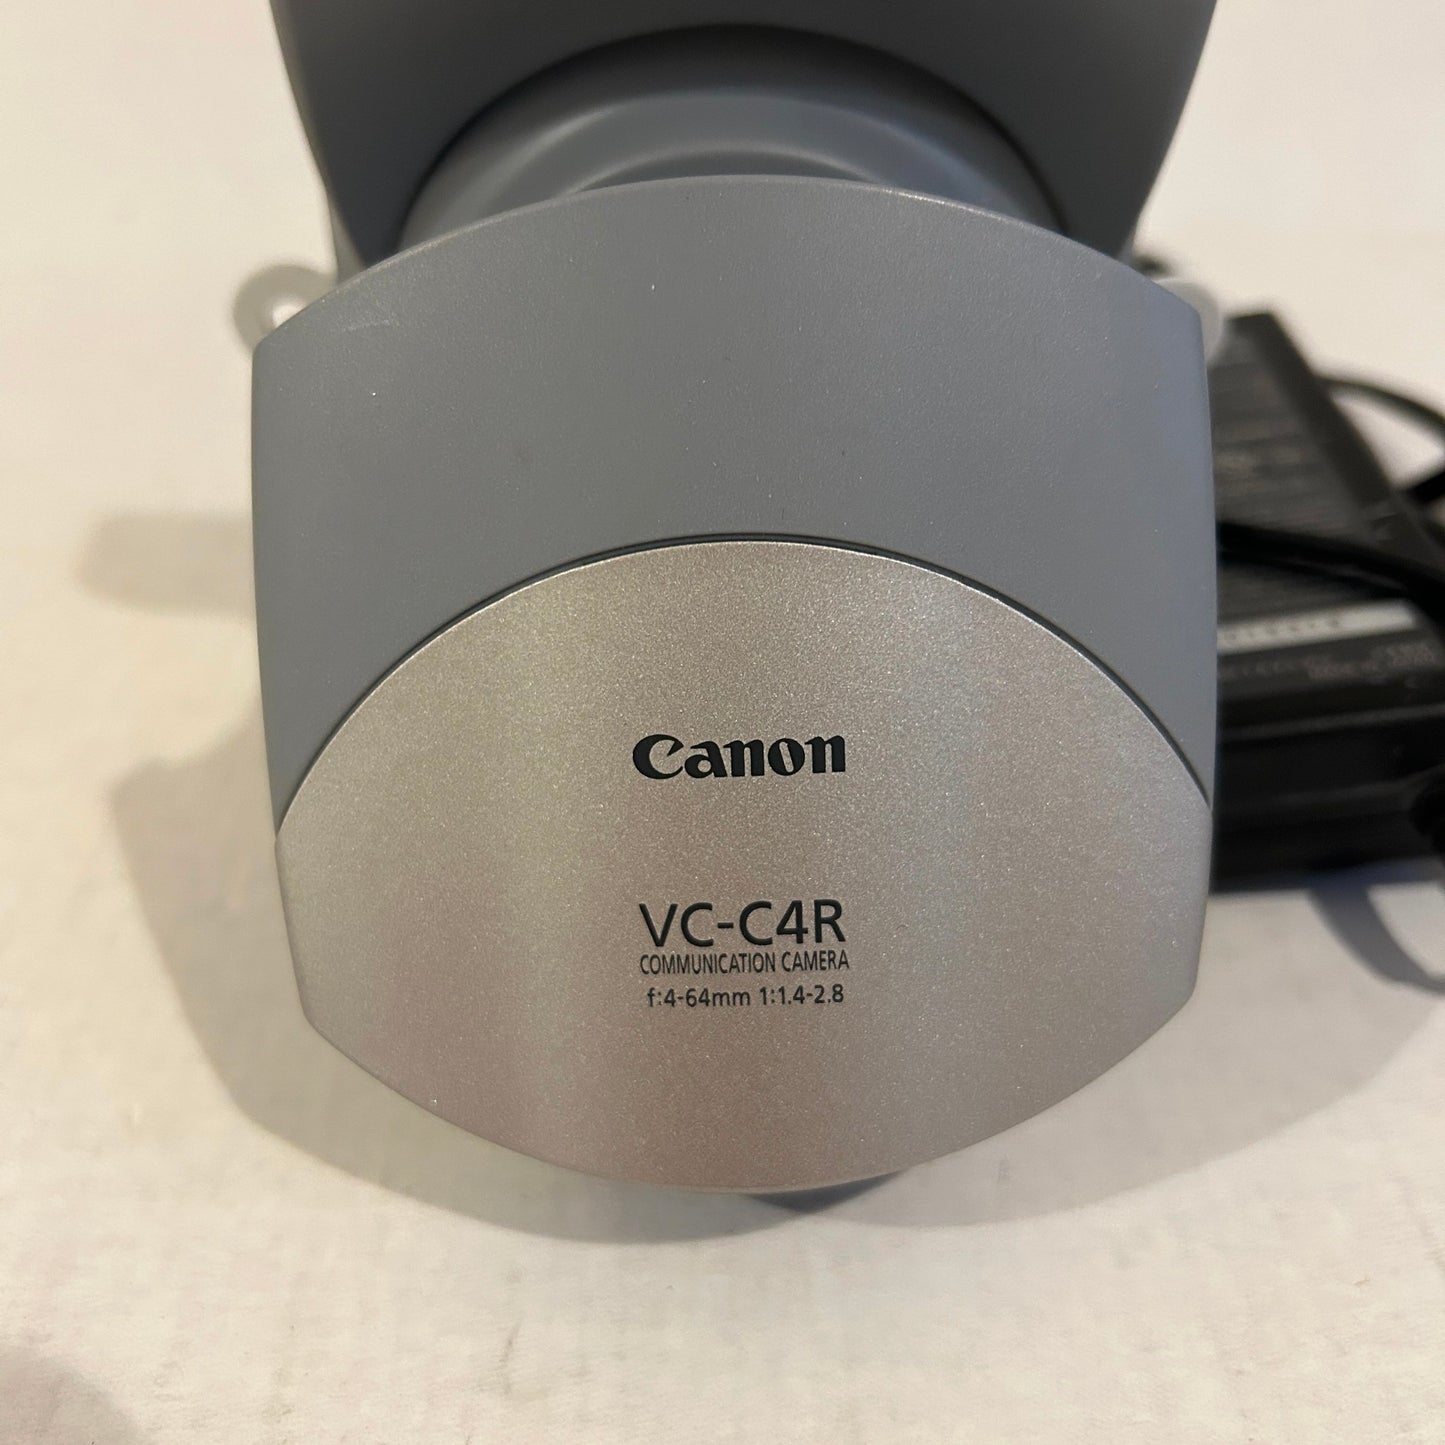 Canon PTZ Color Communicaton Camera - VC-C4R